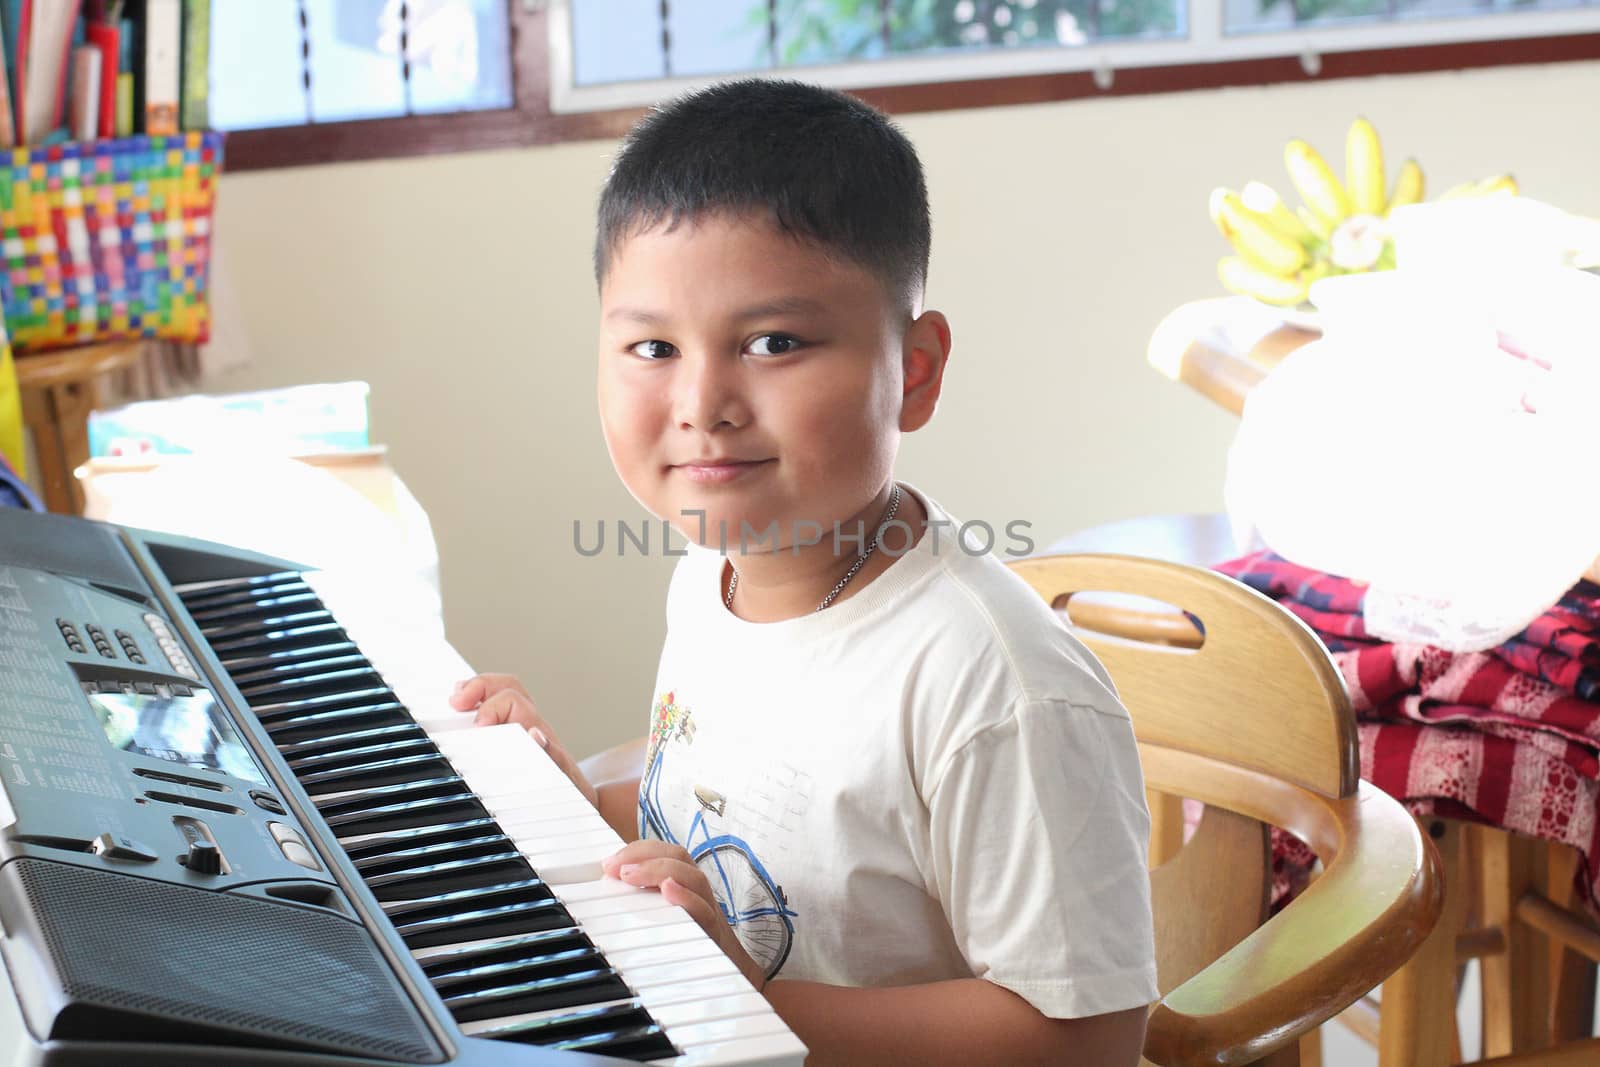 Little Boy playing piano fun